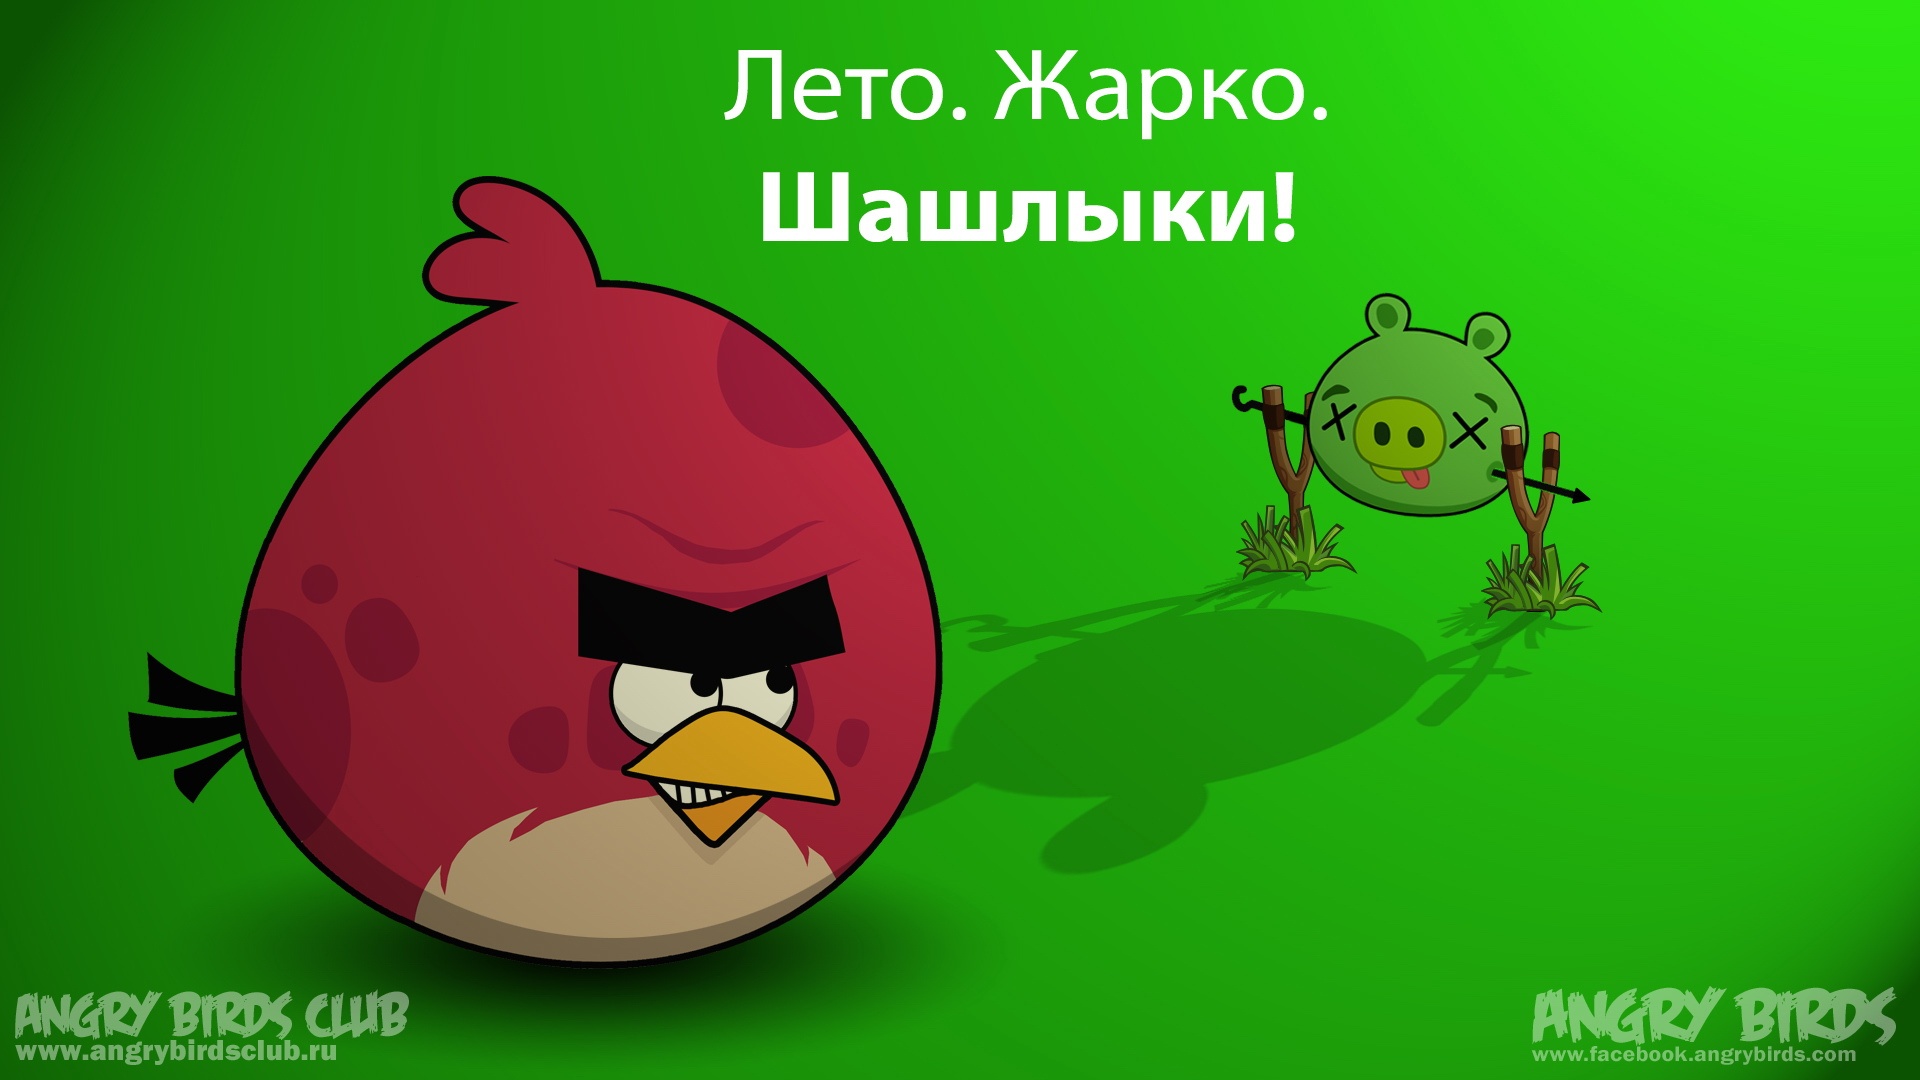 android安卓愤怒的小鸟 angry birds 可爱 卡通 游戏 宽屏高清手机